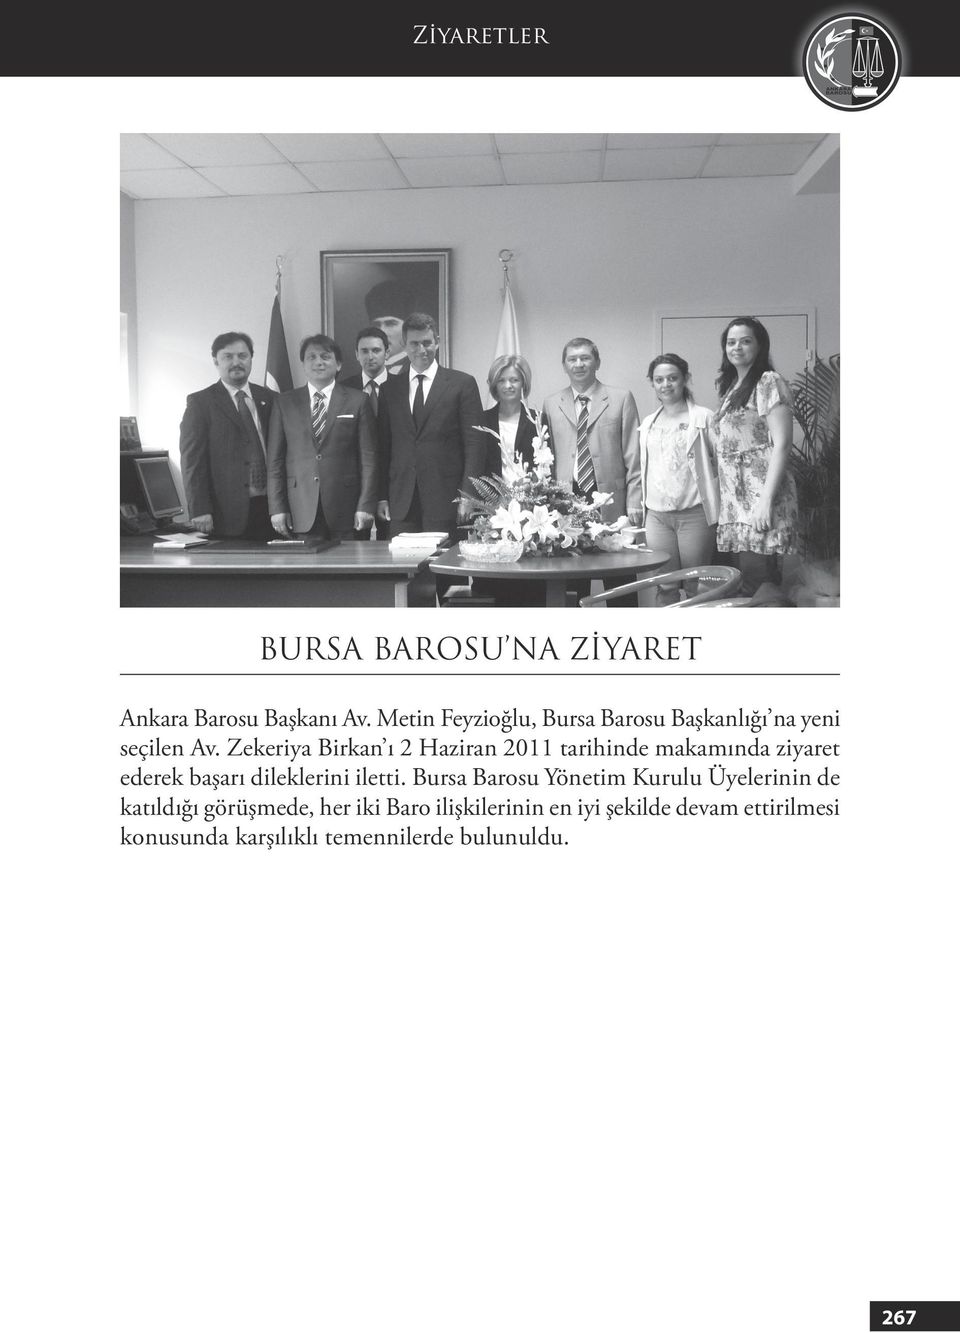 Zekeriya Birkan ı 2 Haziran 2011 tarihinde makamında ziyaret ederek başarı dileklerini iletti.